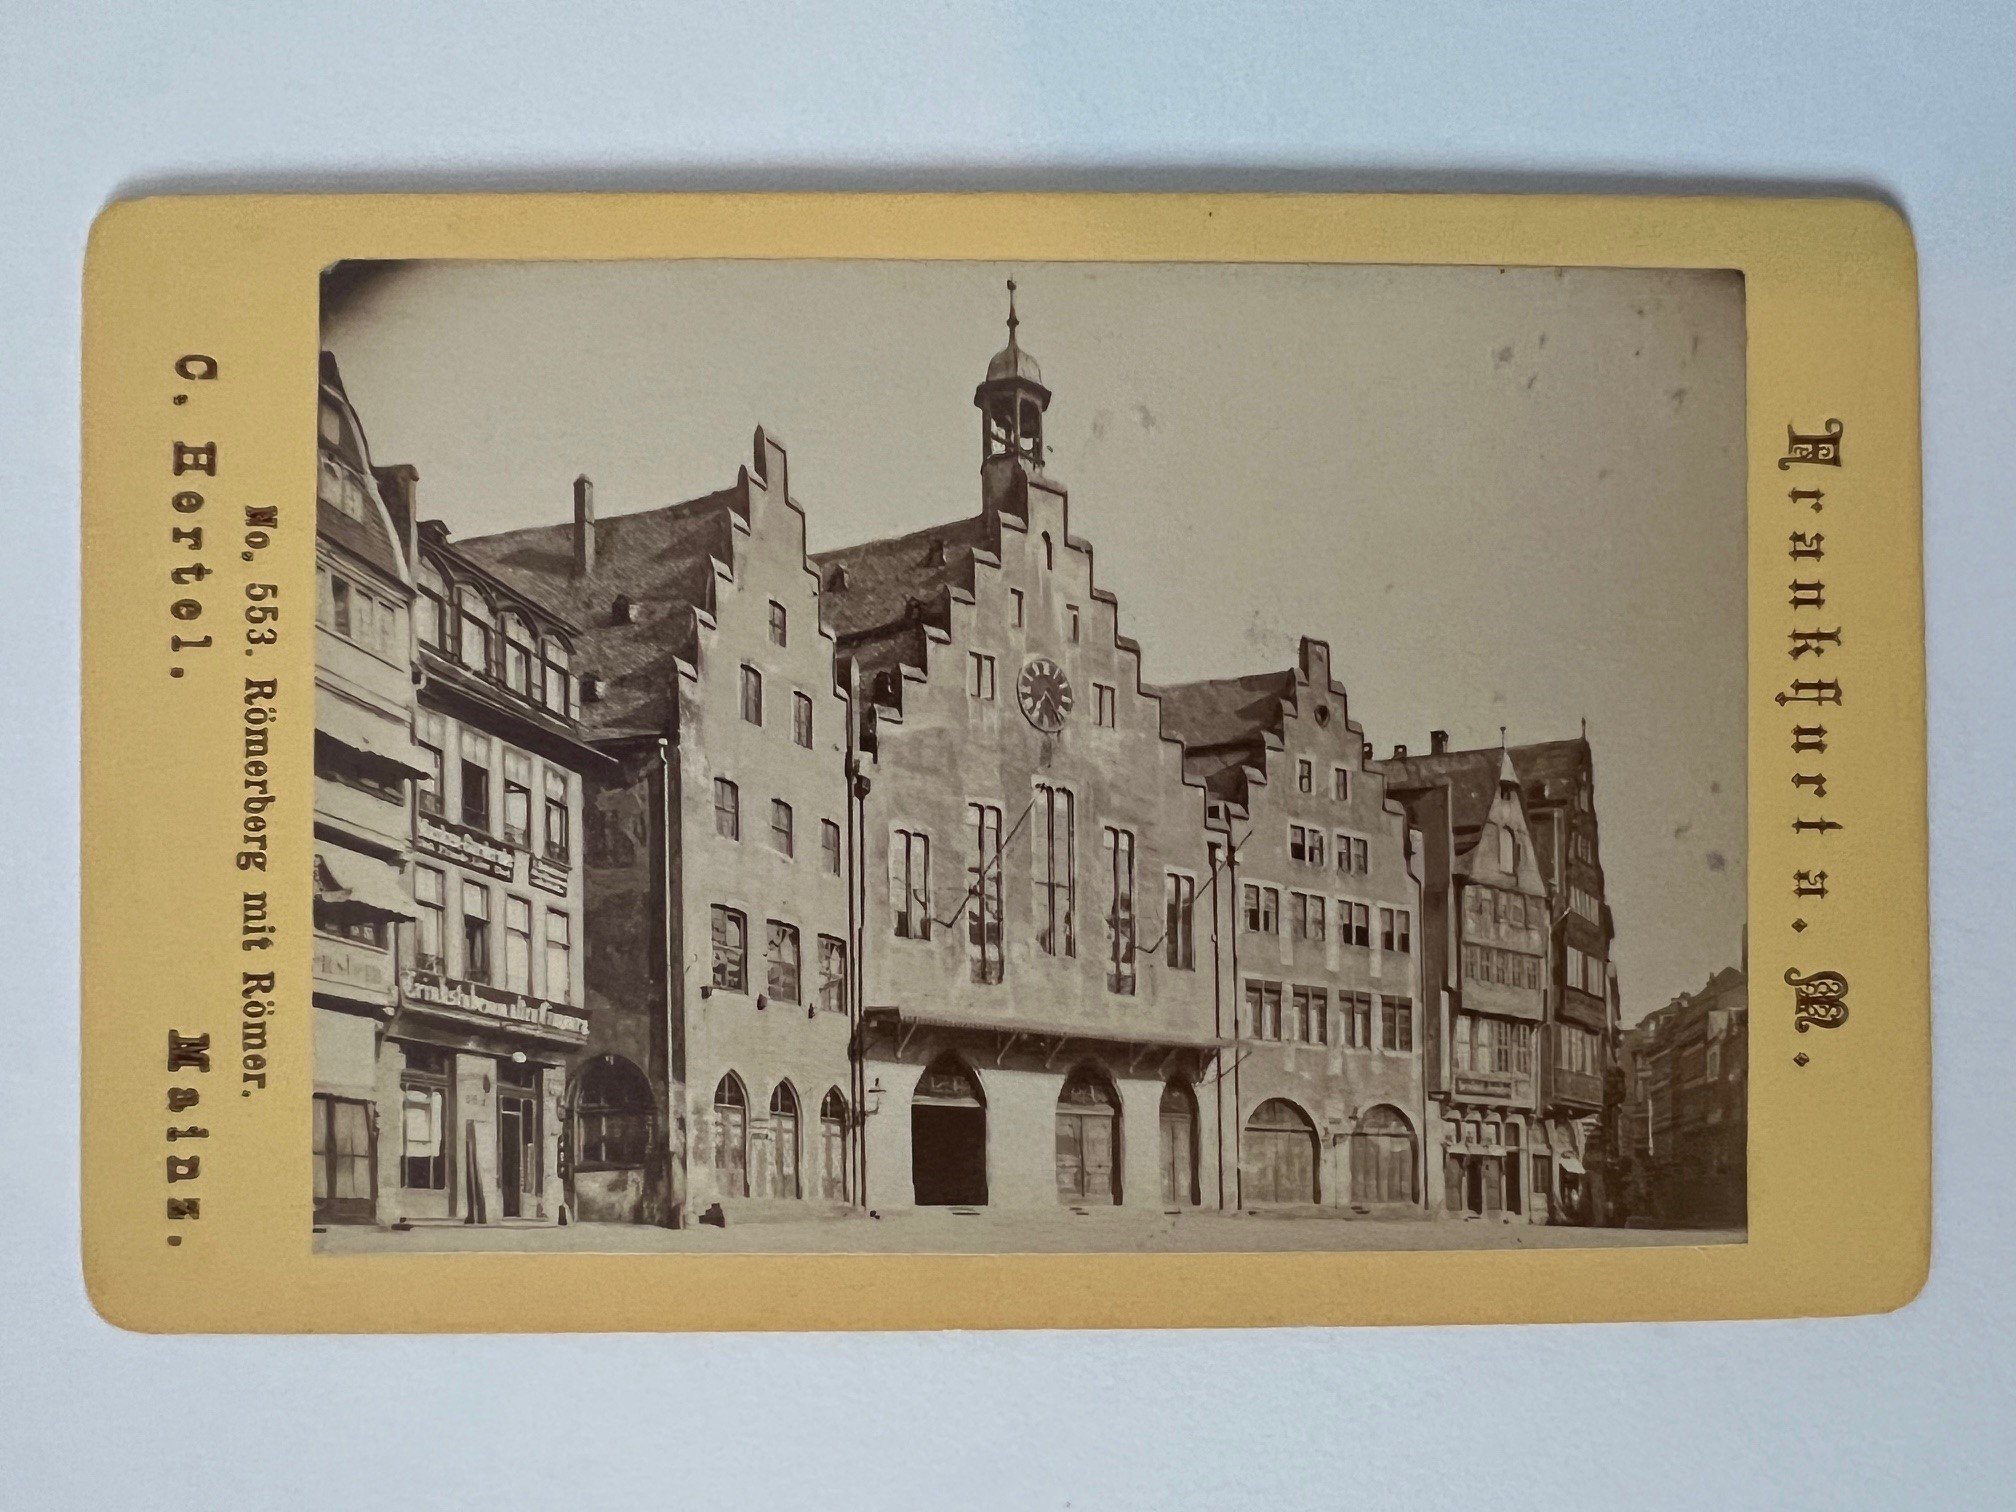 CdV, Carl Hertel, Frankfurt, Römerberg mit Römer, 1870. (Taunus-Rhein-Main - Regionalgeschichtliche Sammlung Dr. Stefan Naas CC BY-NC-SA)